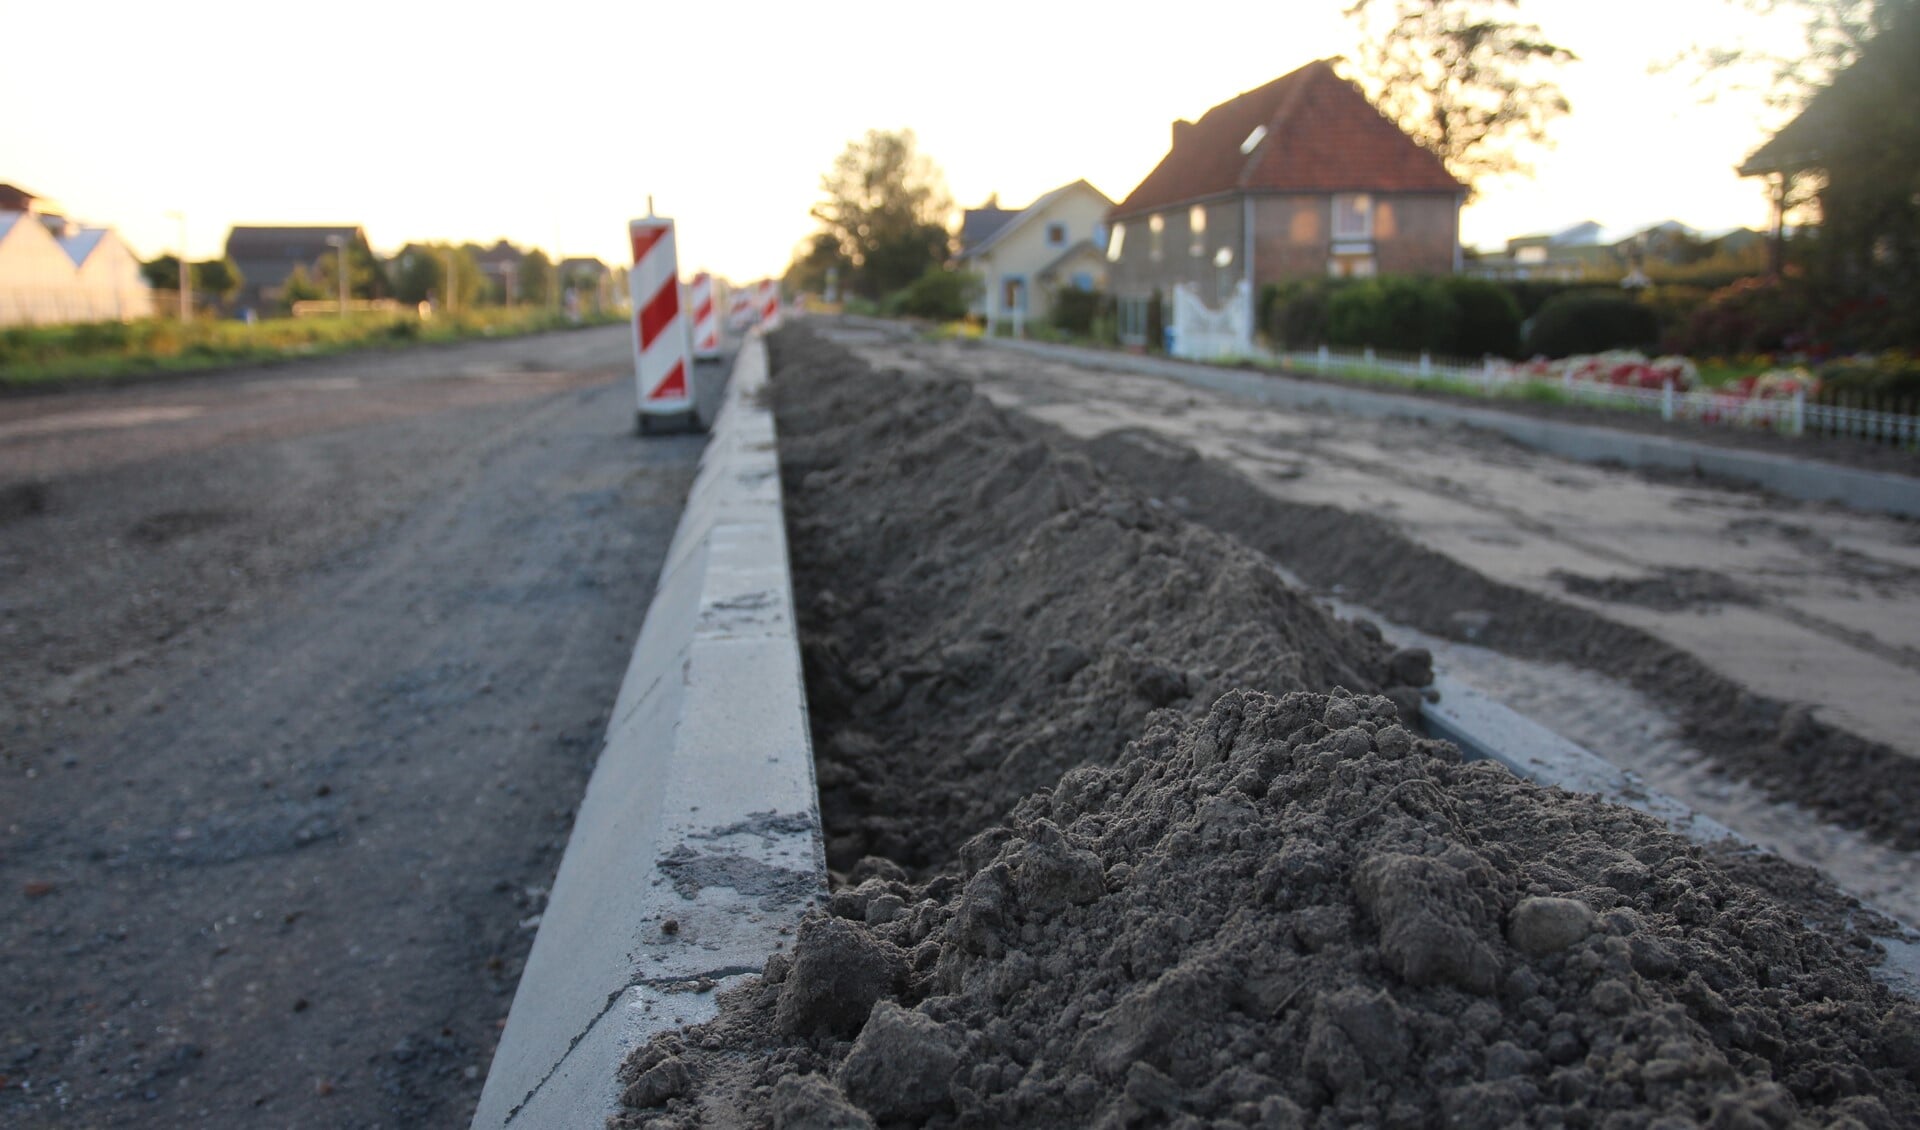 Ook Gemeentebelangen wil weten waarom de weg aan ‘de huizenkant’25 centimeter hoger moet worden.